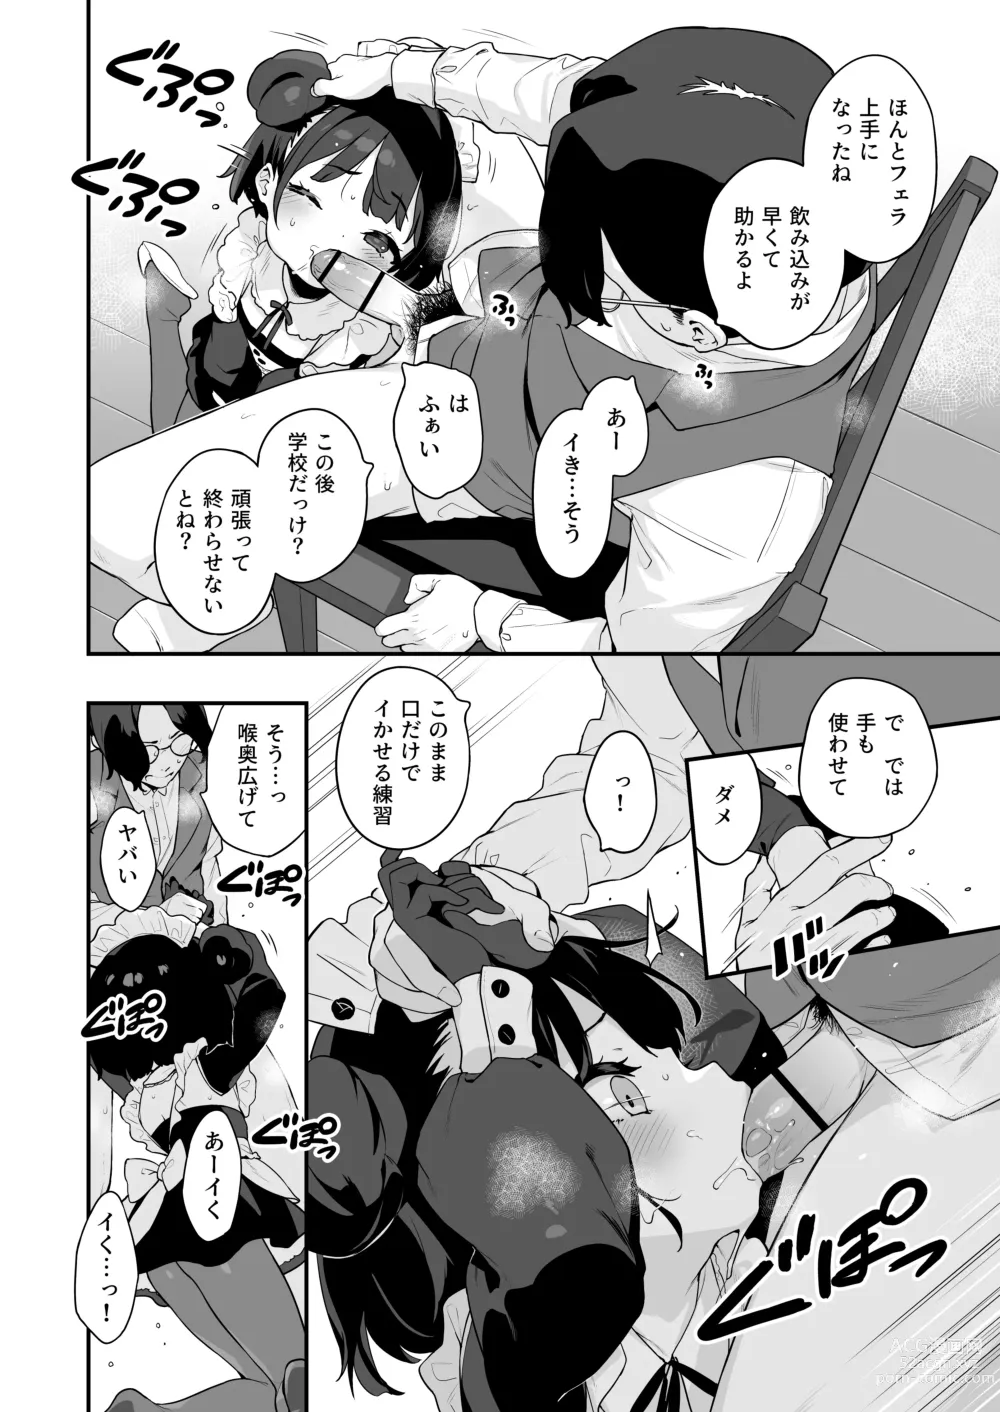 Page 6 of doujinshi Komomo wa Goshujinsama Senyo no Ryoana Nikubenki Loli Maid